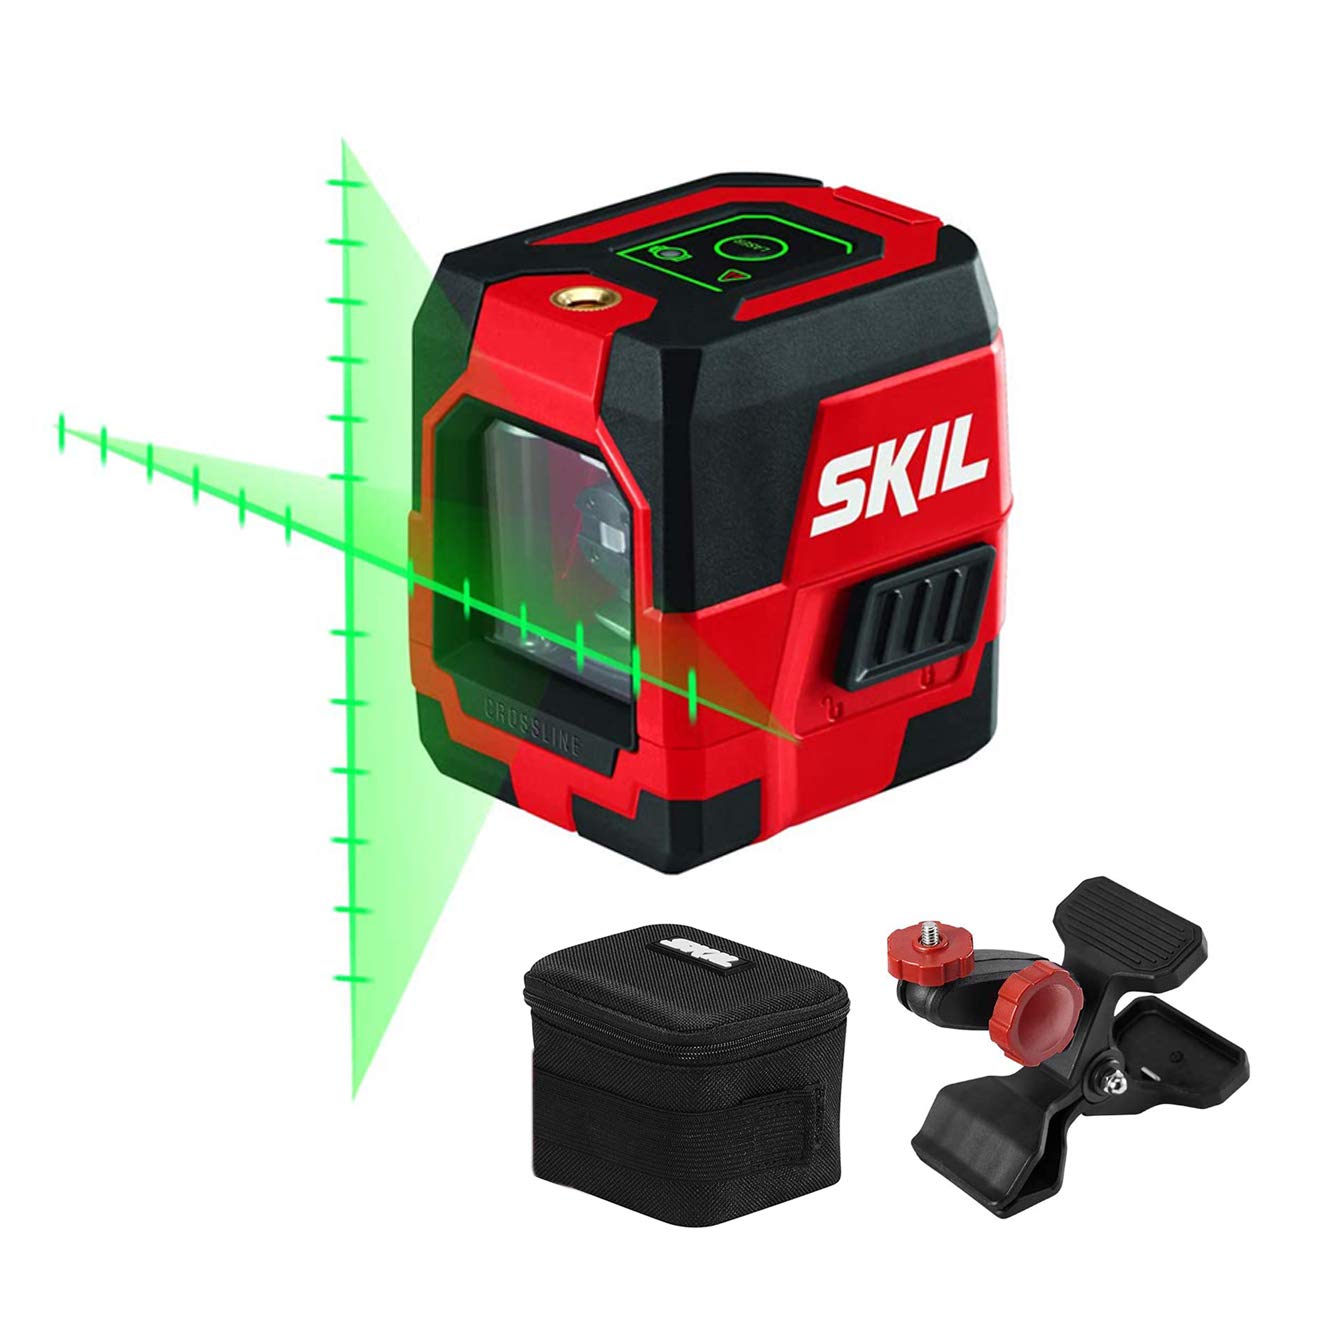 Skil 투사된 측정 표시가 있는 셀프 레벨링 녹십자 라인 레이저